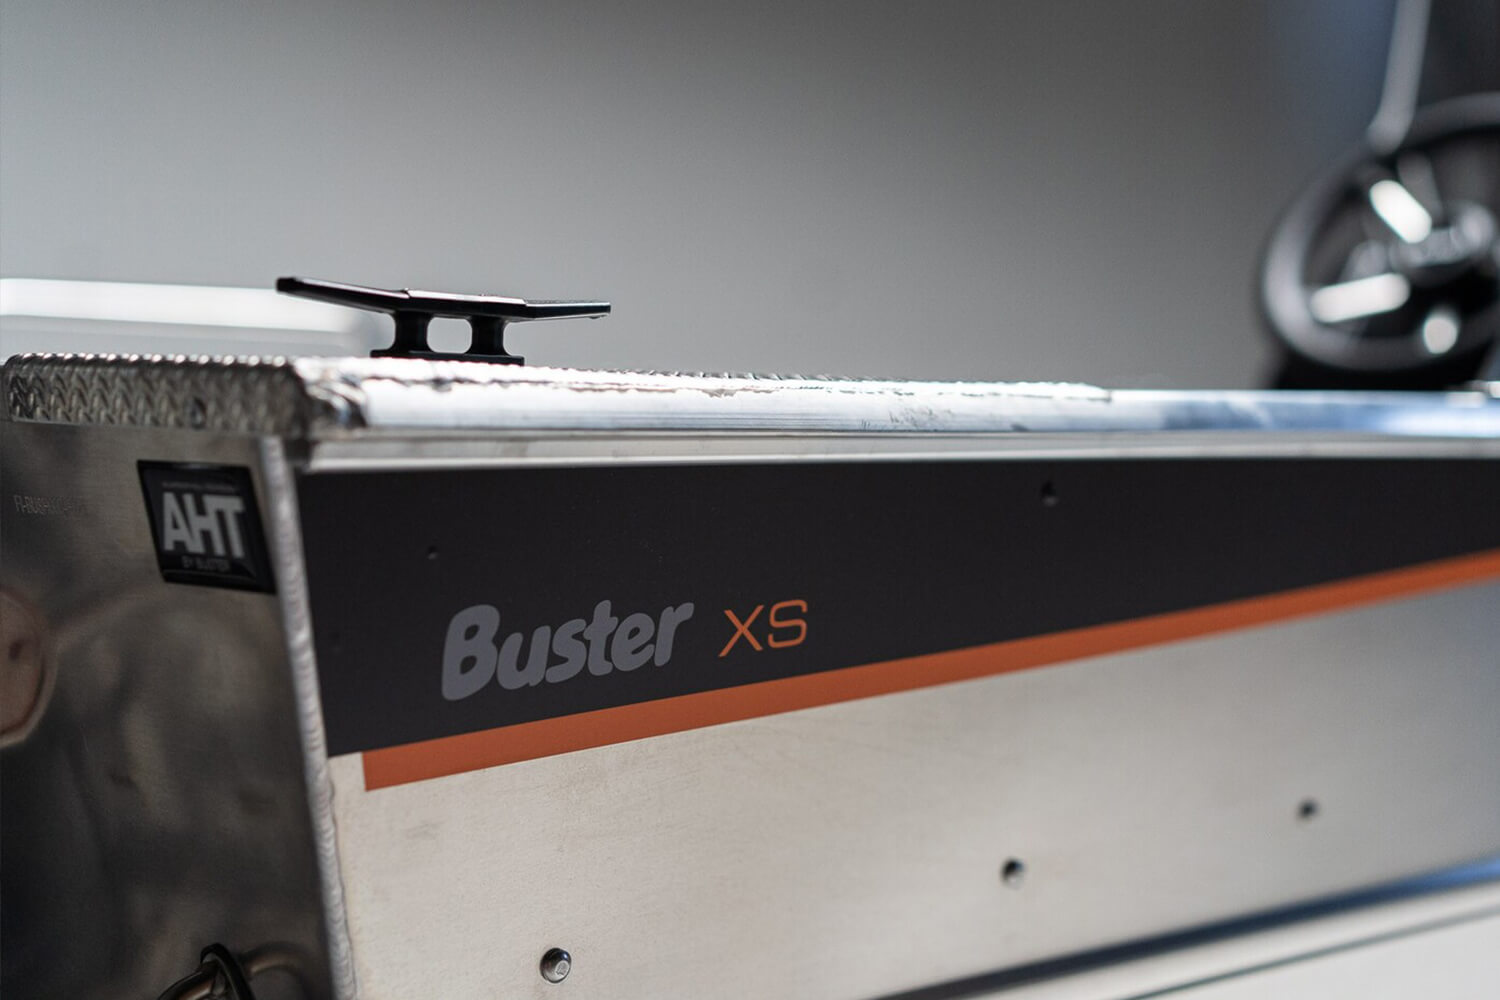 BUSTER XSR, Алюминиевая лодка Buster, Алюминиевая лодка Buster XSR, Aluminium boat BUSTER XSR, Алюмінієвий човен Buster XSR, Алюмінієвий катер Buster XSR, Алюминиевый катер Buster XSR